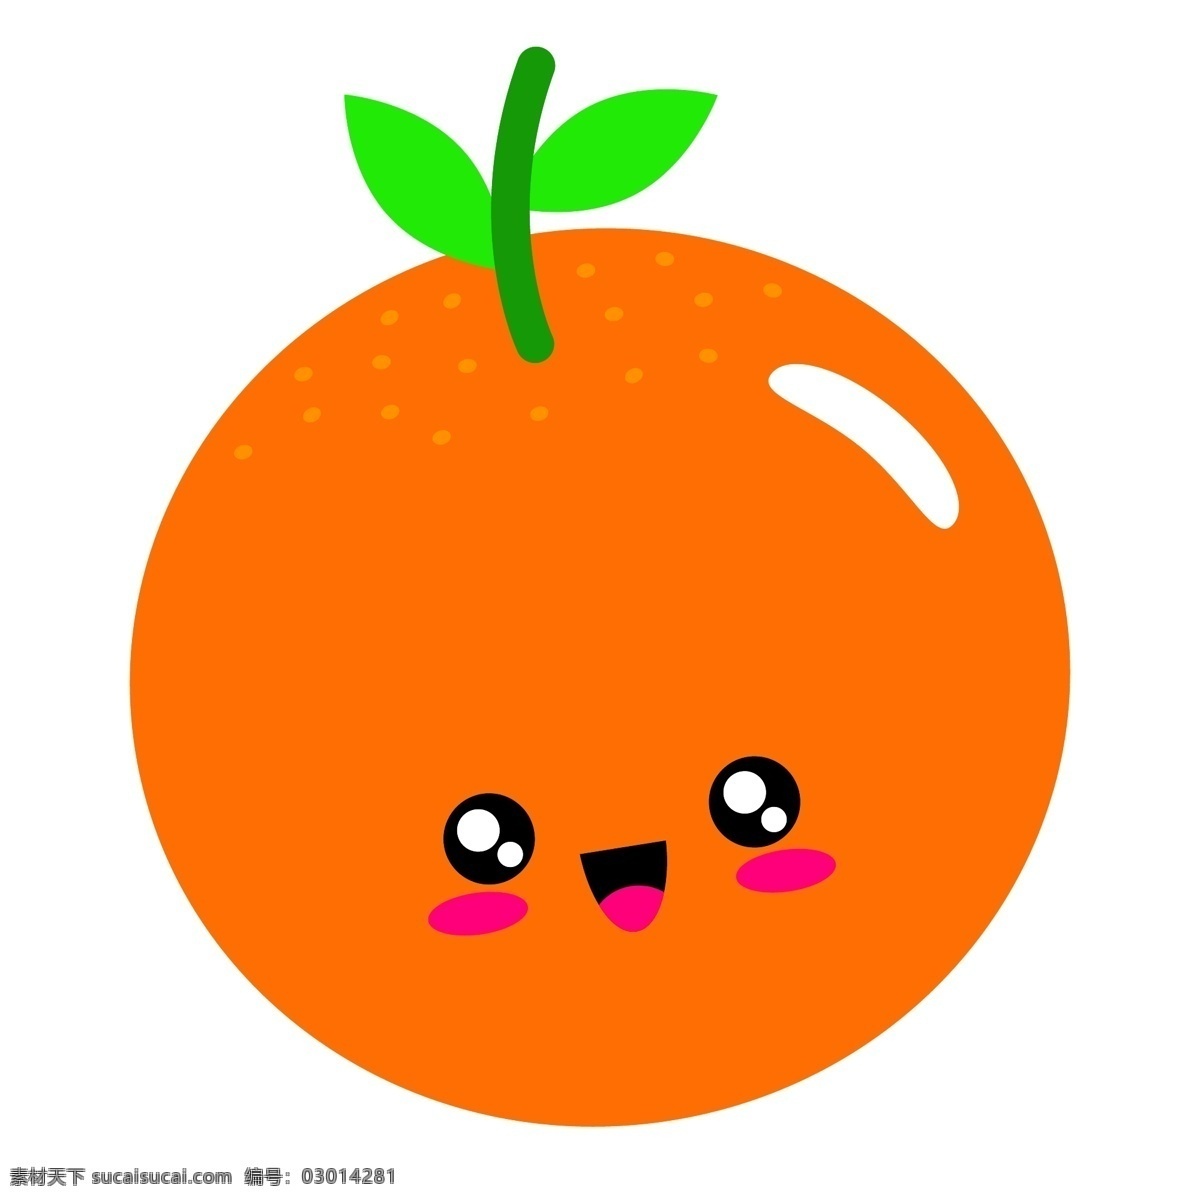 卡通可爱柑橘 果主题 手绘水果 水彩水果 矢量 水果 水果素材 新鲜水果 矢量水果素材 卡通水果素材 卡通水果 橙子 橙汁 饮料 横切面 香橙 橙子矢量图 橘子 柑橘 甜橙 桔子 标志图标 其他图标